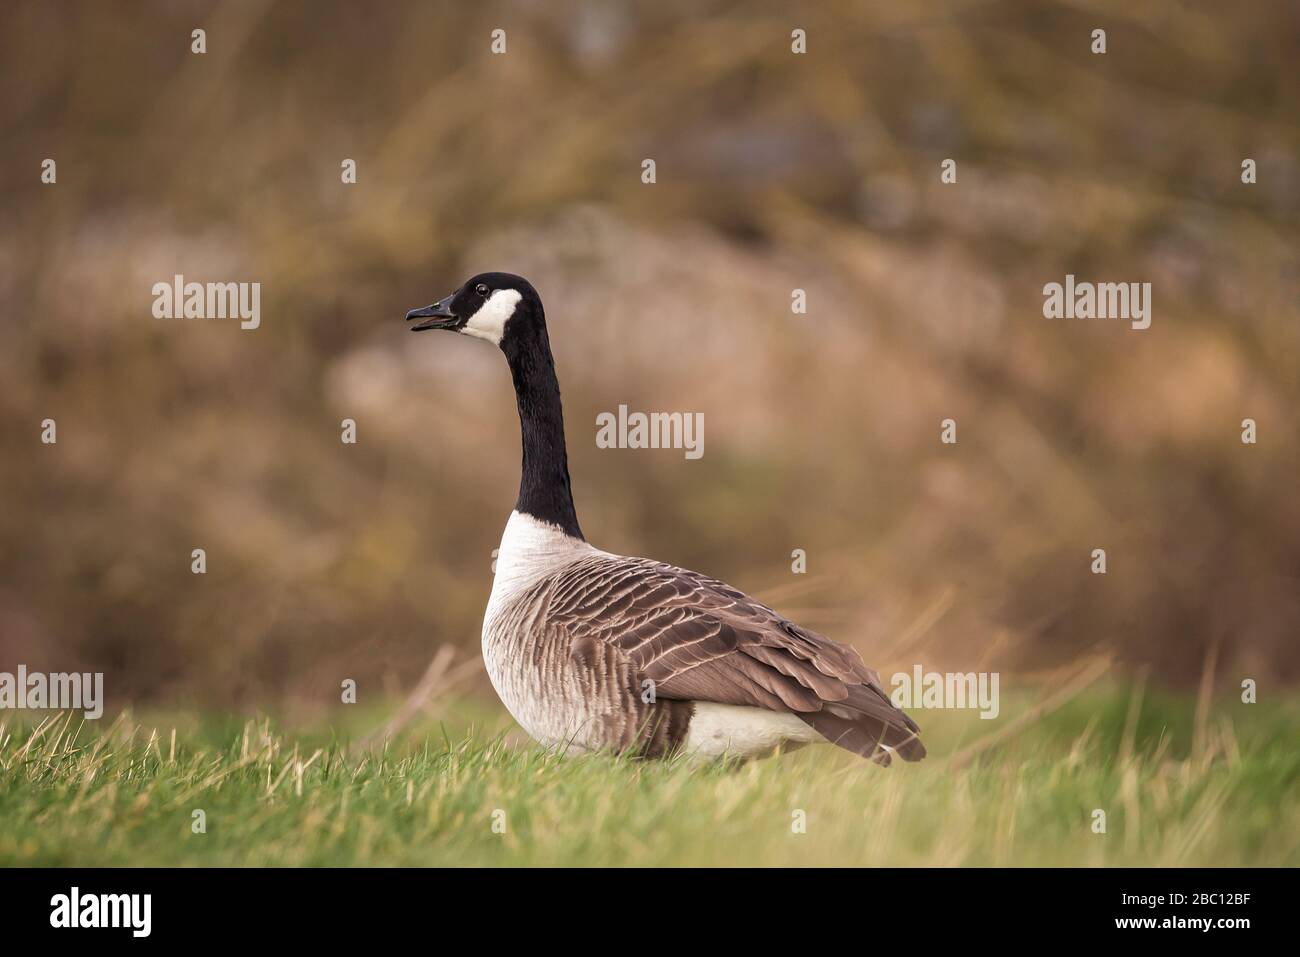 UK Wildlife , Canadian goose with black background. Stowe, Northamptonshire, England Stock Photo